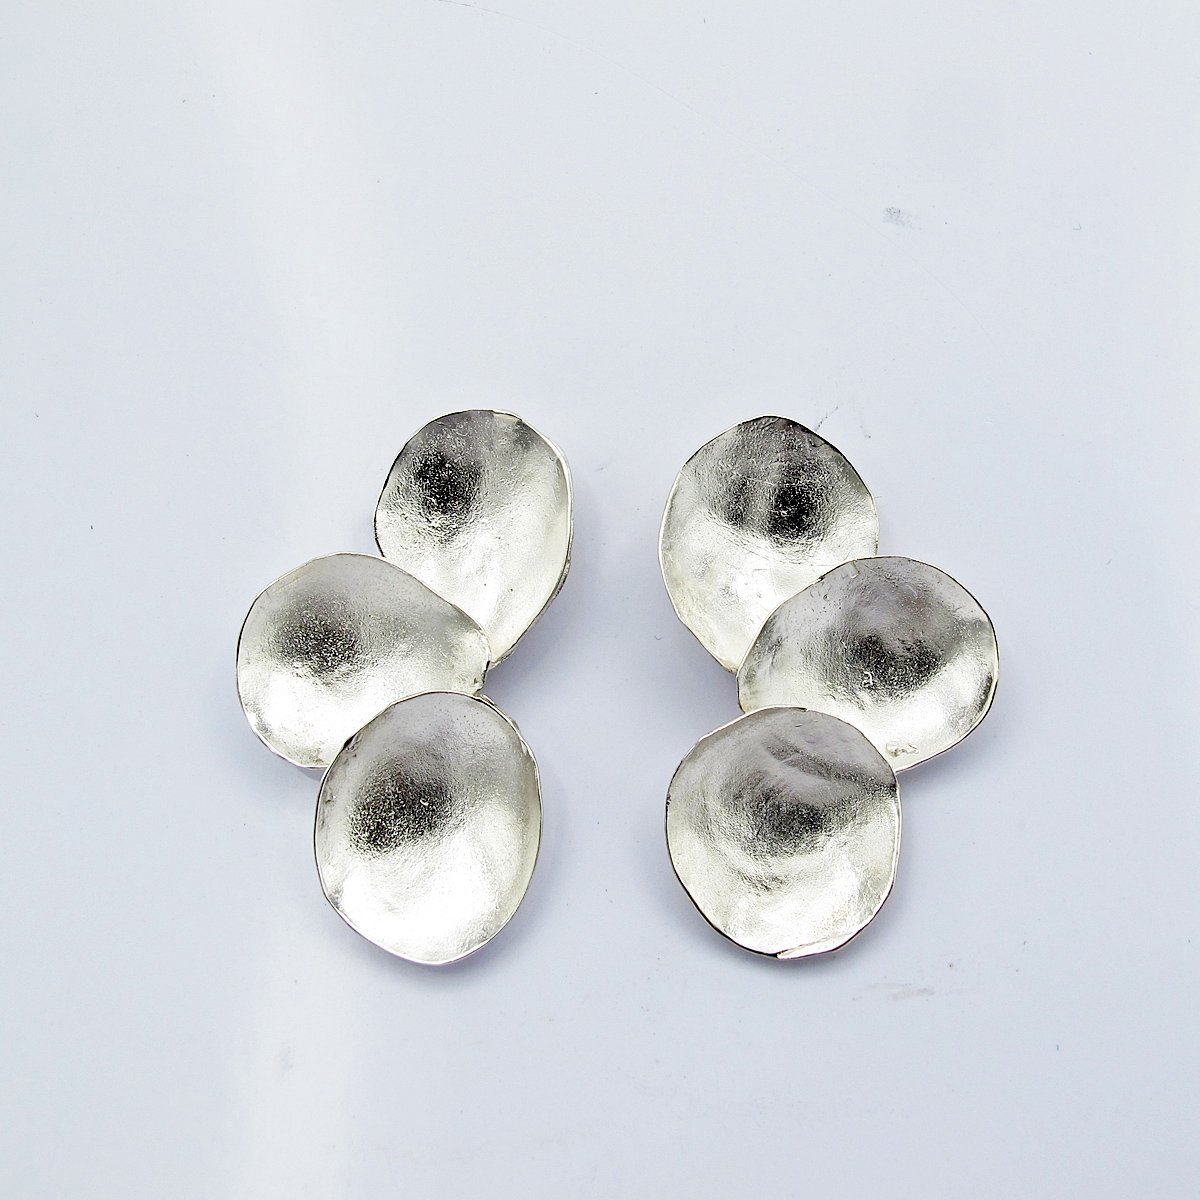 Alba - ByTess - Oorbellen - Dames oorbellen - Sieraden - Dames sieraden - Oorstekers - Zilver - 925 - Zilveren sieraden - Zilveren oorbellen - Cadeau tip - Luxe verpakt - Unieke sieraden